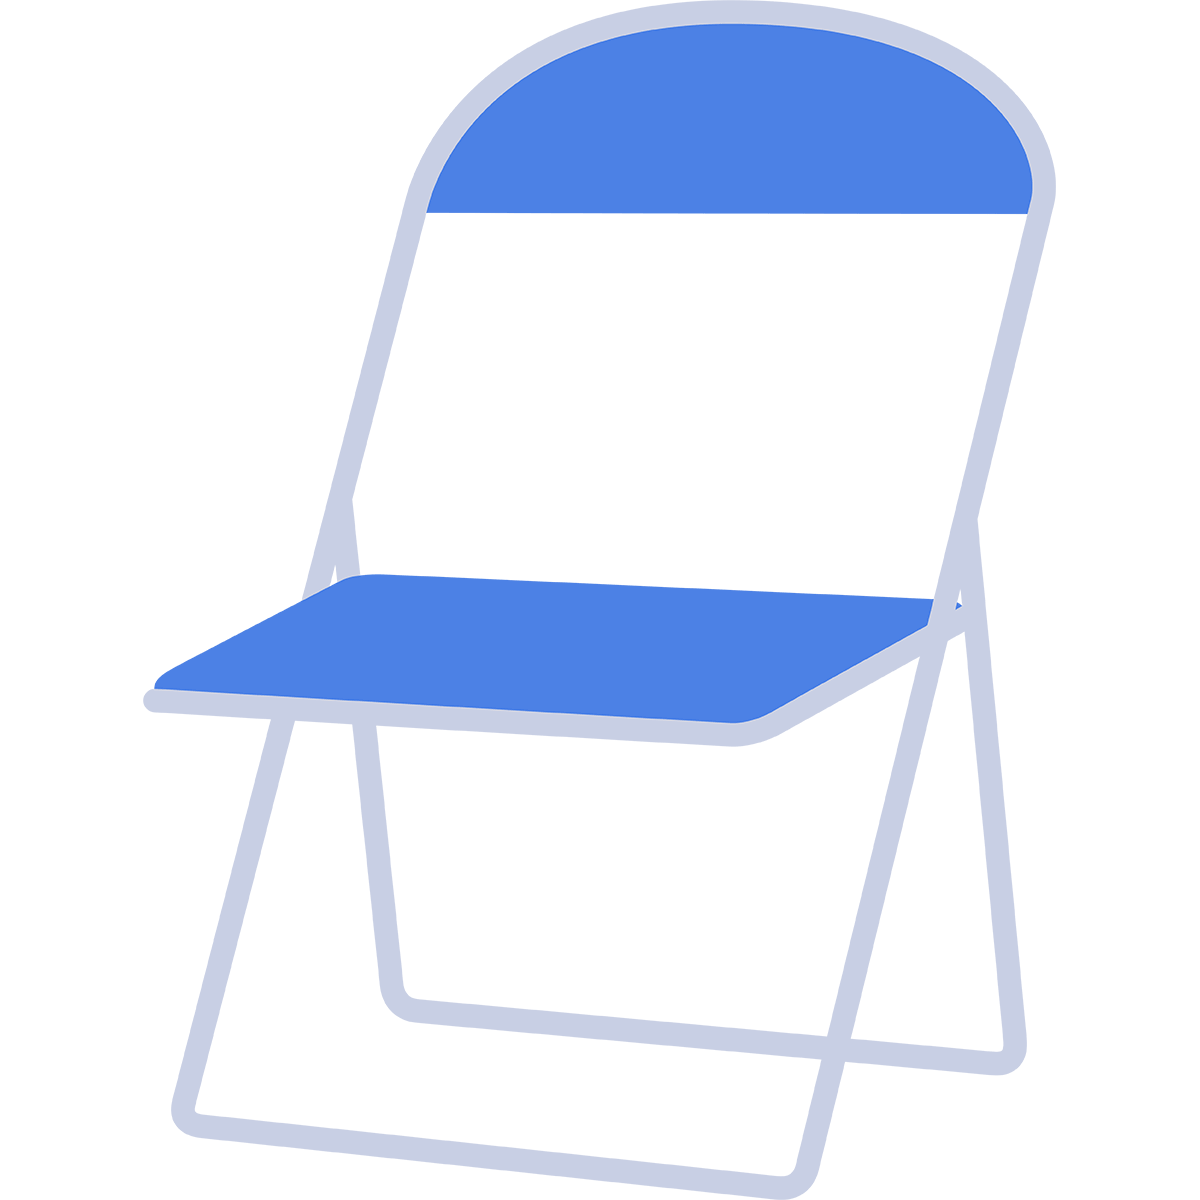 パイプ椅子の無料イラスト